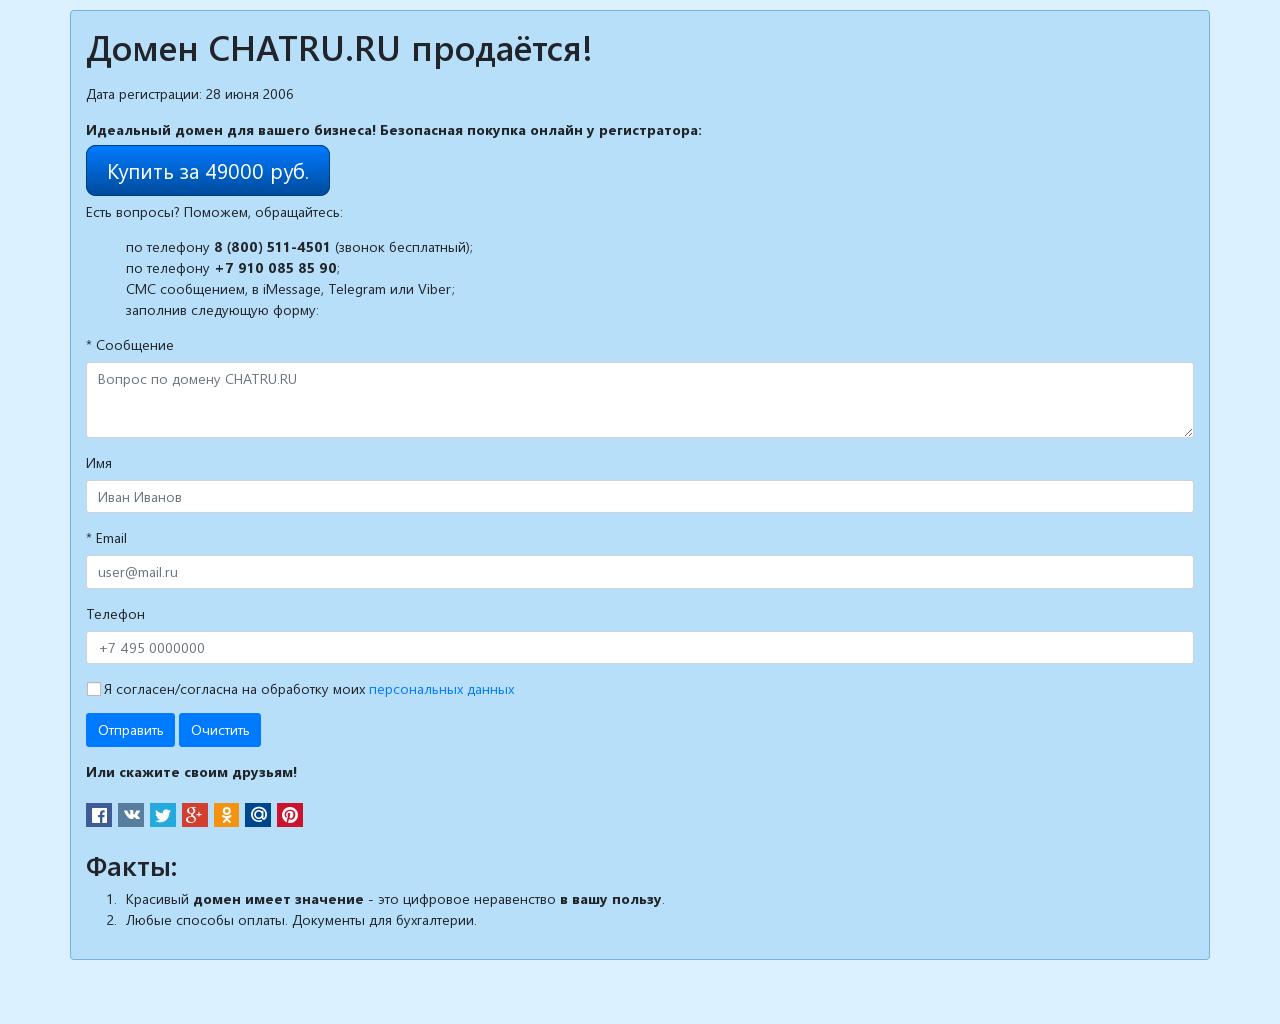 Изображение сайта chatru.ru в разрешении 1280x1024